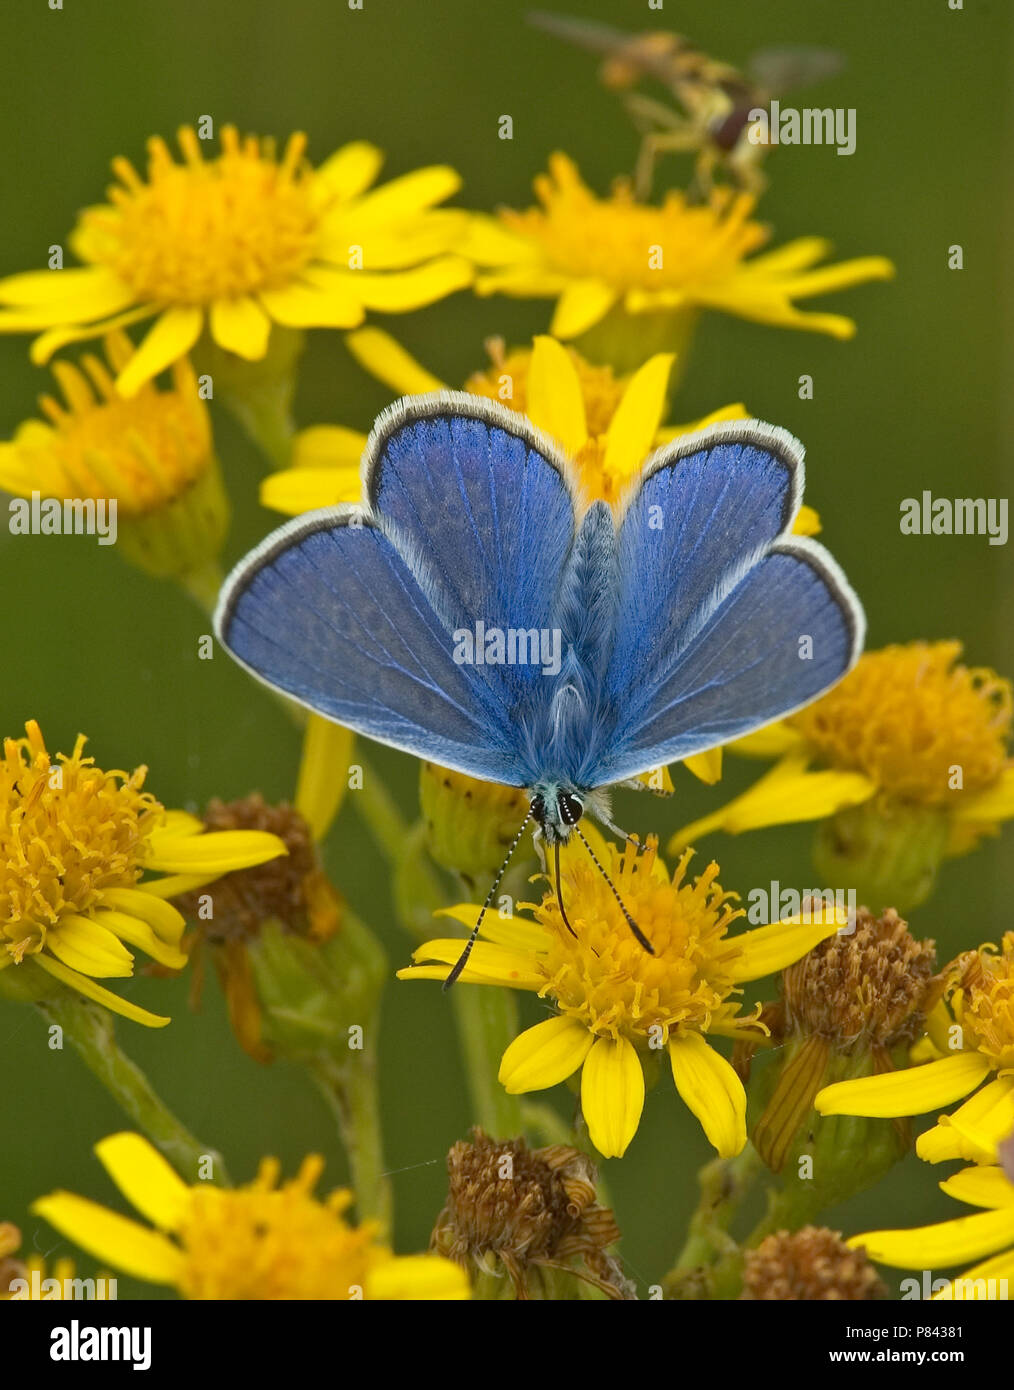 Icarusblauwtje; Azul común Foto de stock